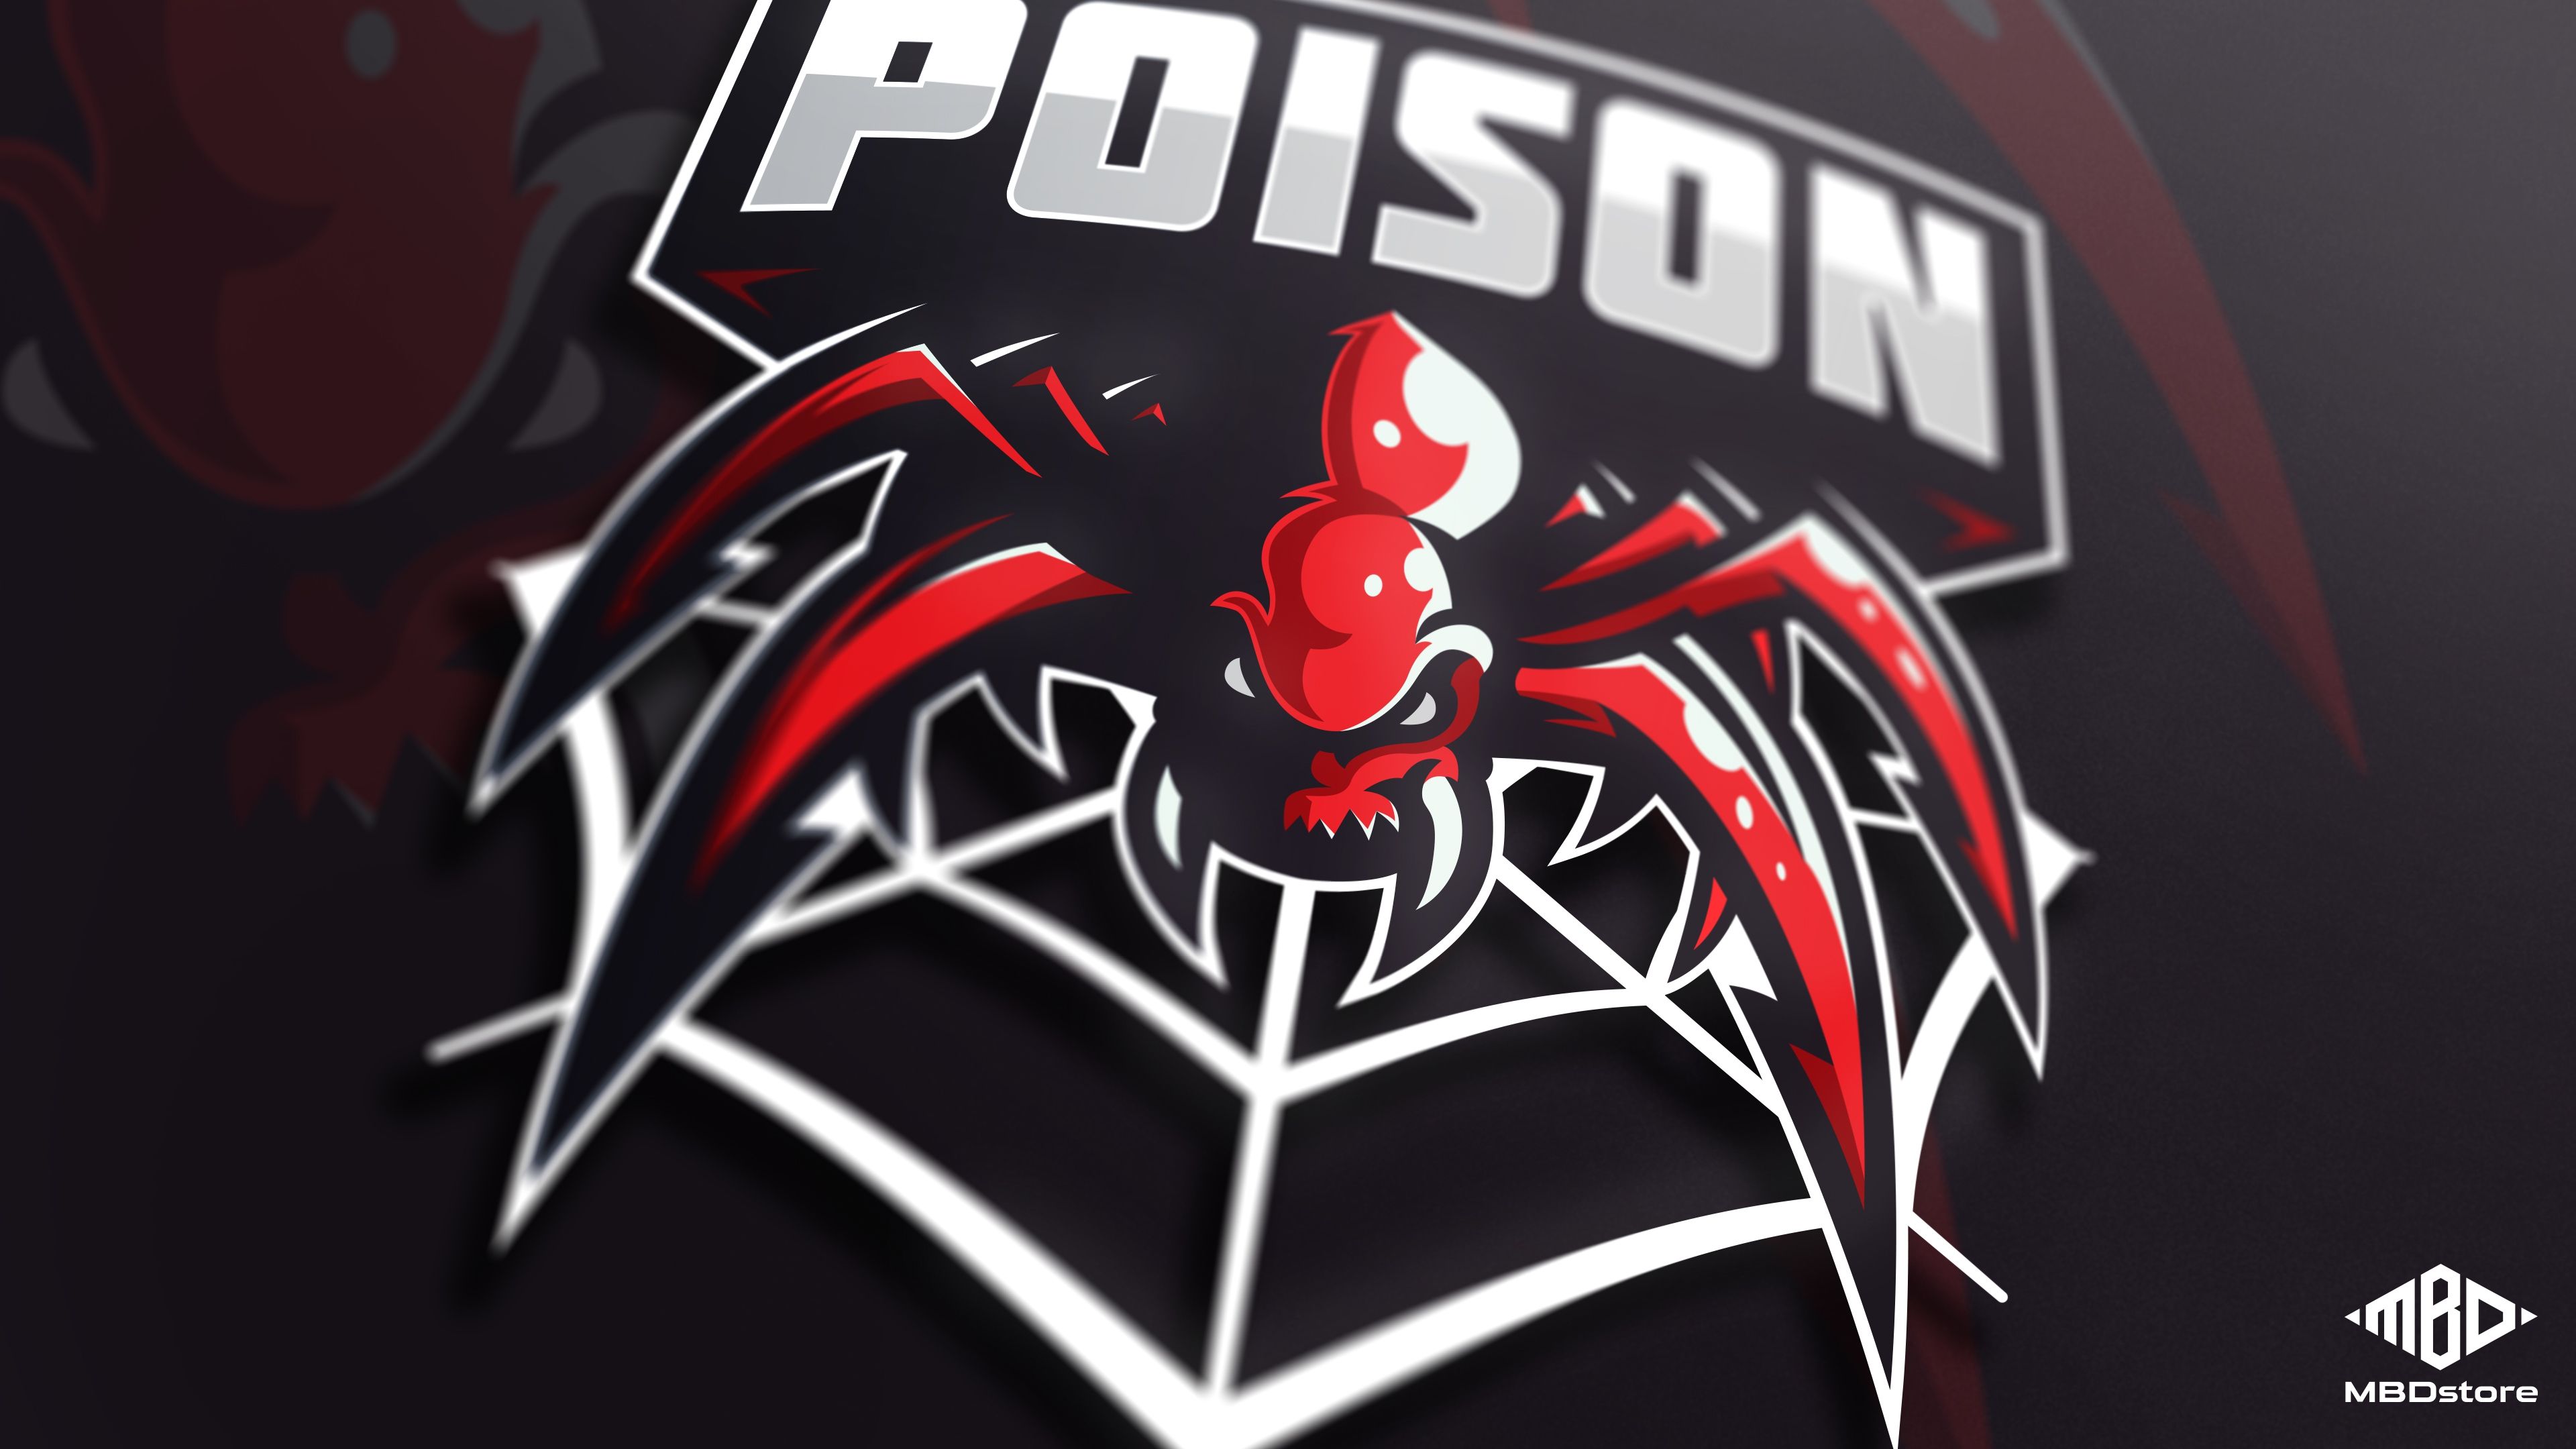 Poison mascot logo